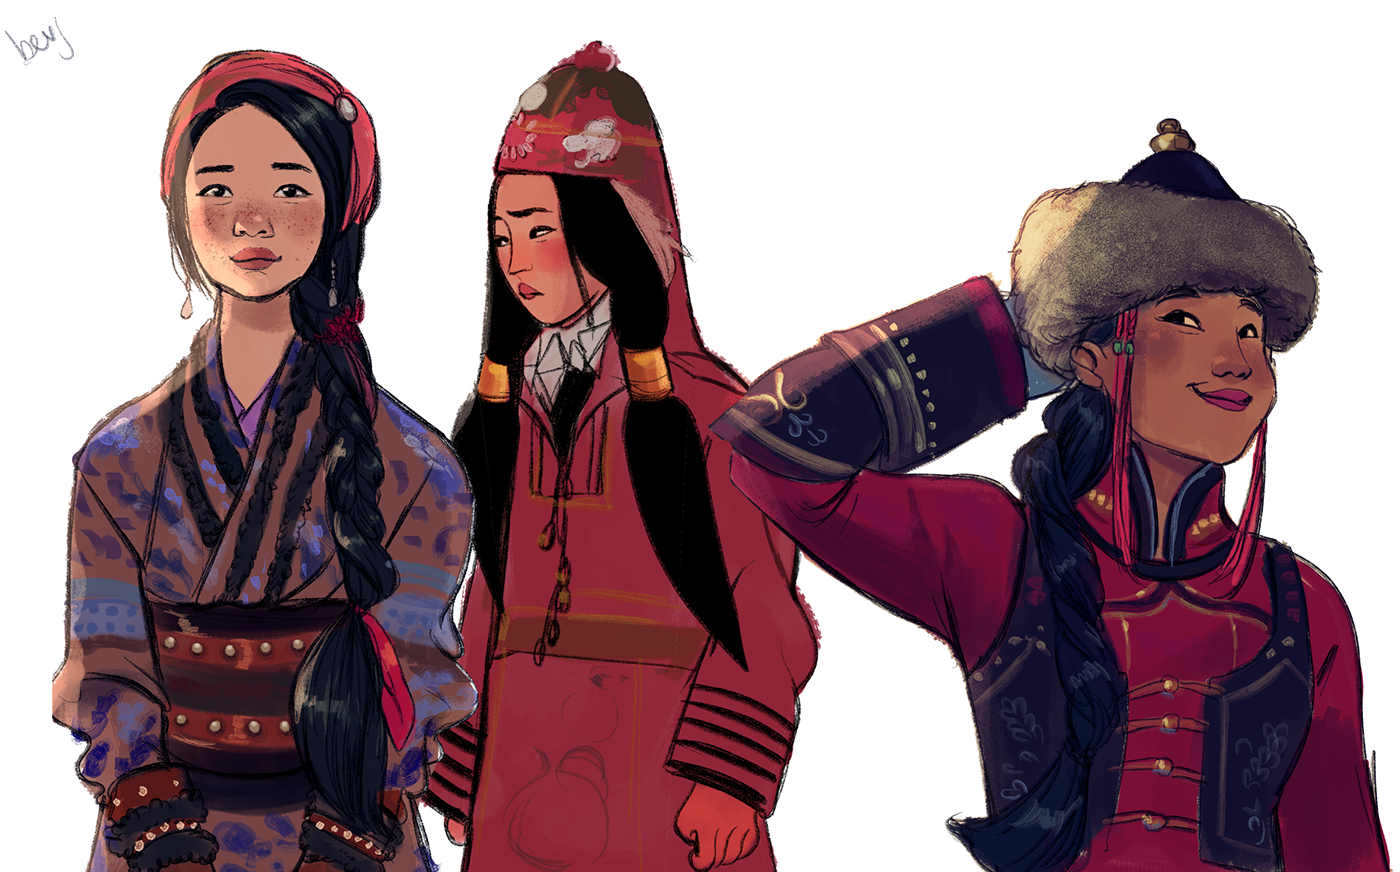 Казах гайд. Казахские арты. Монгольские женщины современные. Казахский персонаж. Казахские иллюстрации.